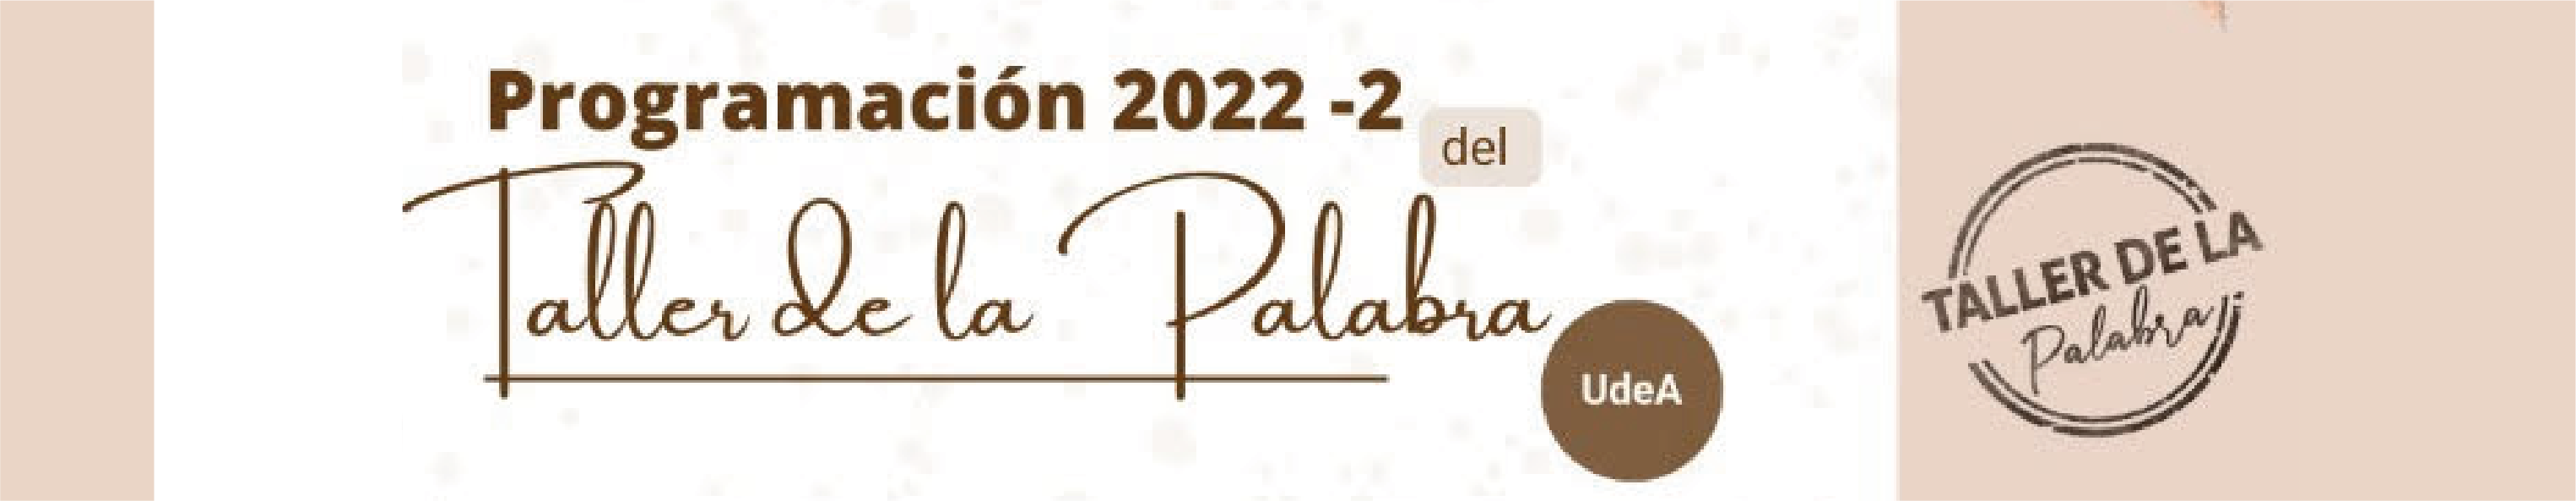 Programación 2022-2 del Taller de la Palabra UdeA